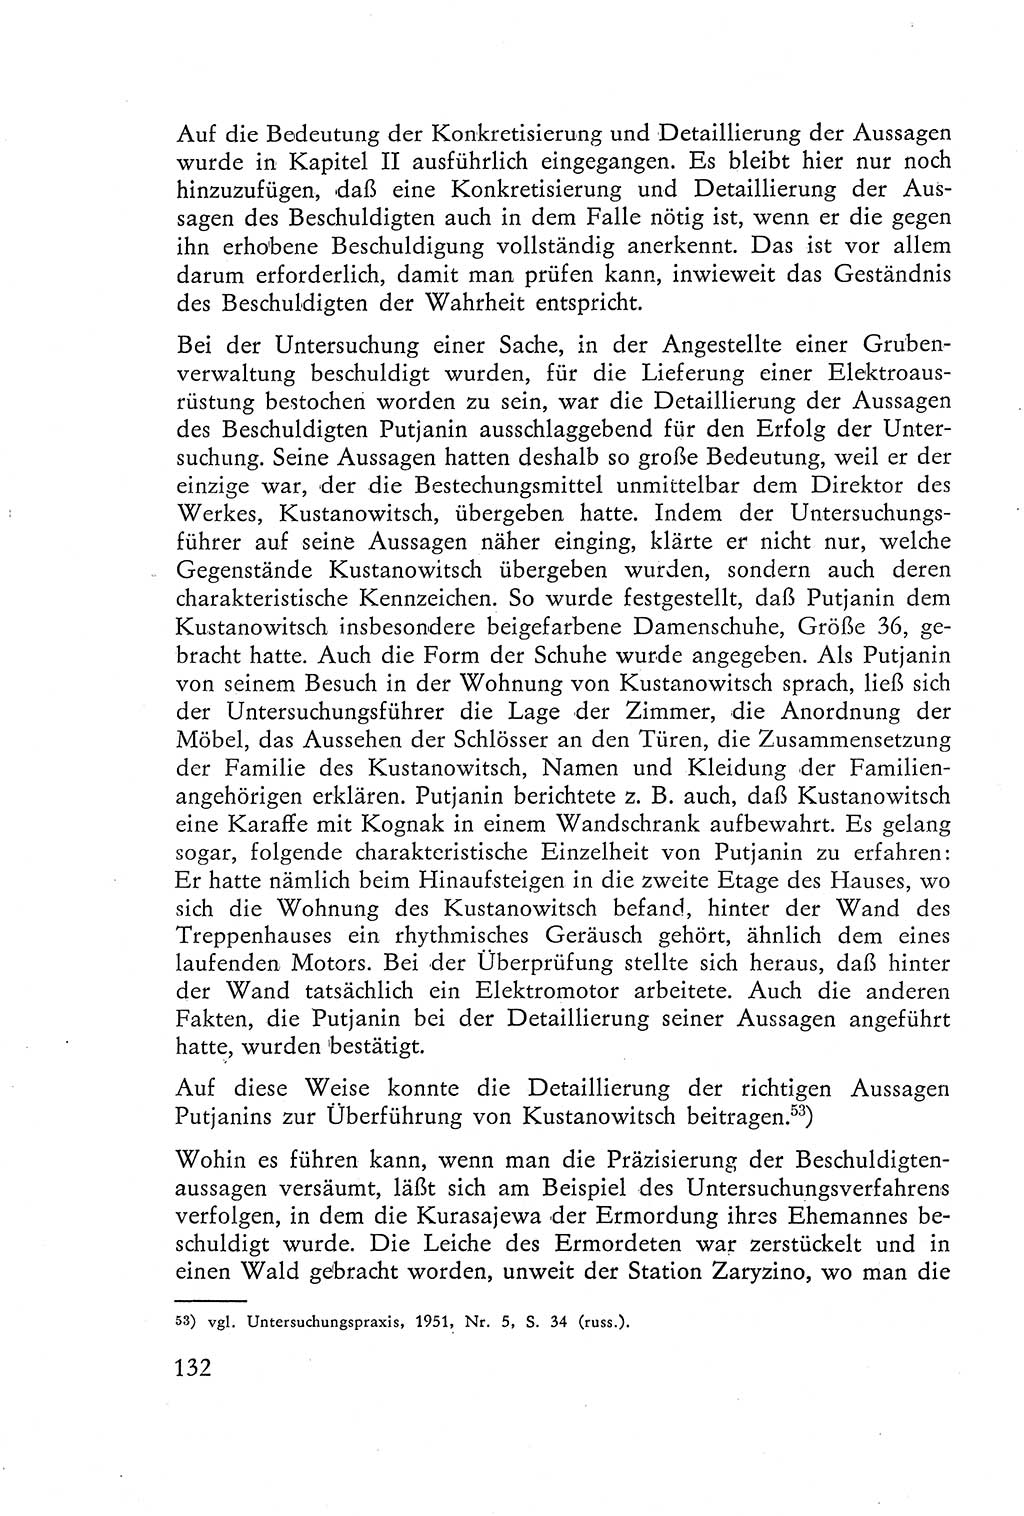 Die Vernehmung [Deutsche Demokratische Republik (DDR)] 1960, Seite 132 (Vern. DDR 1960, S. 132)